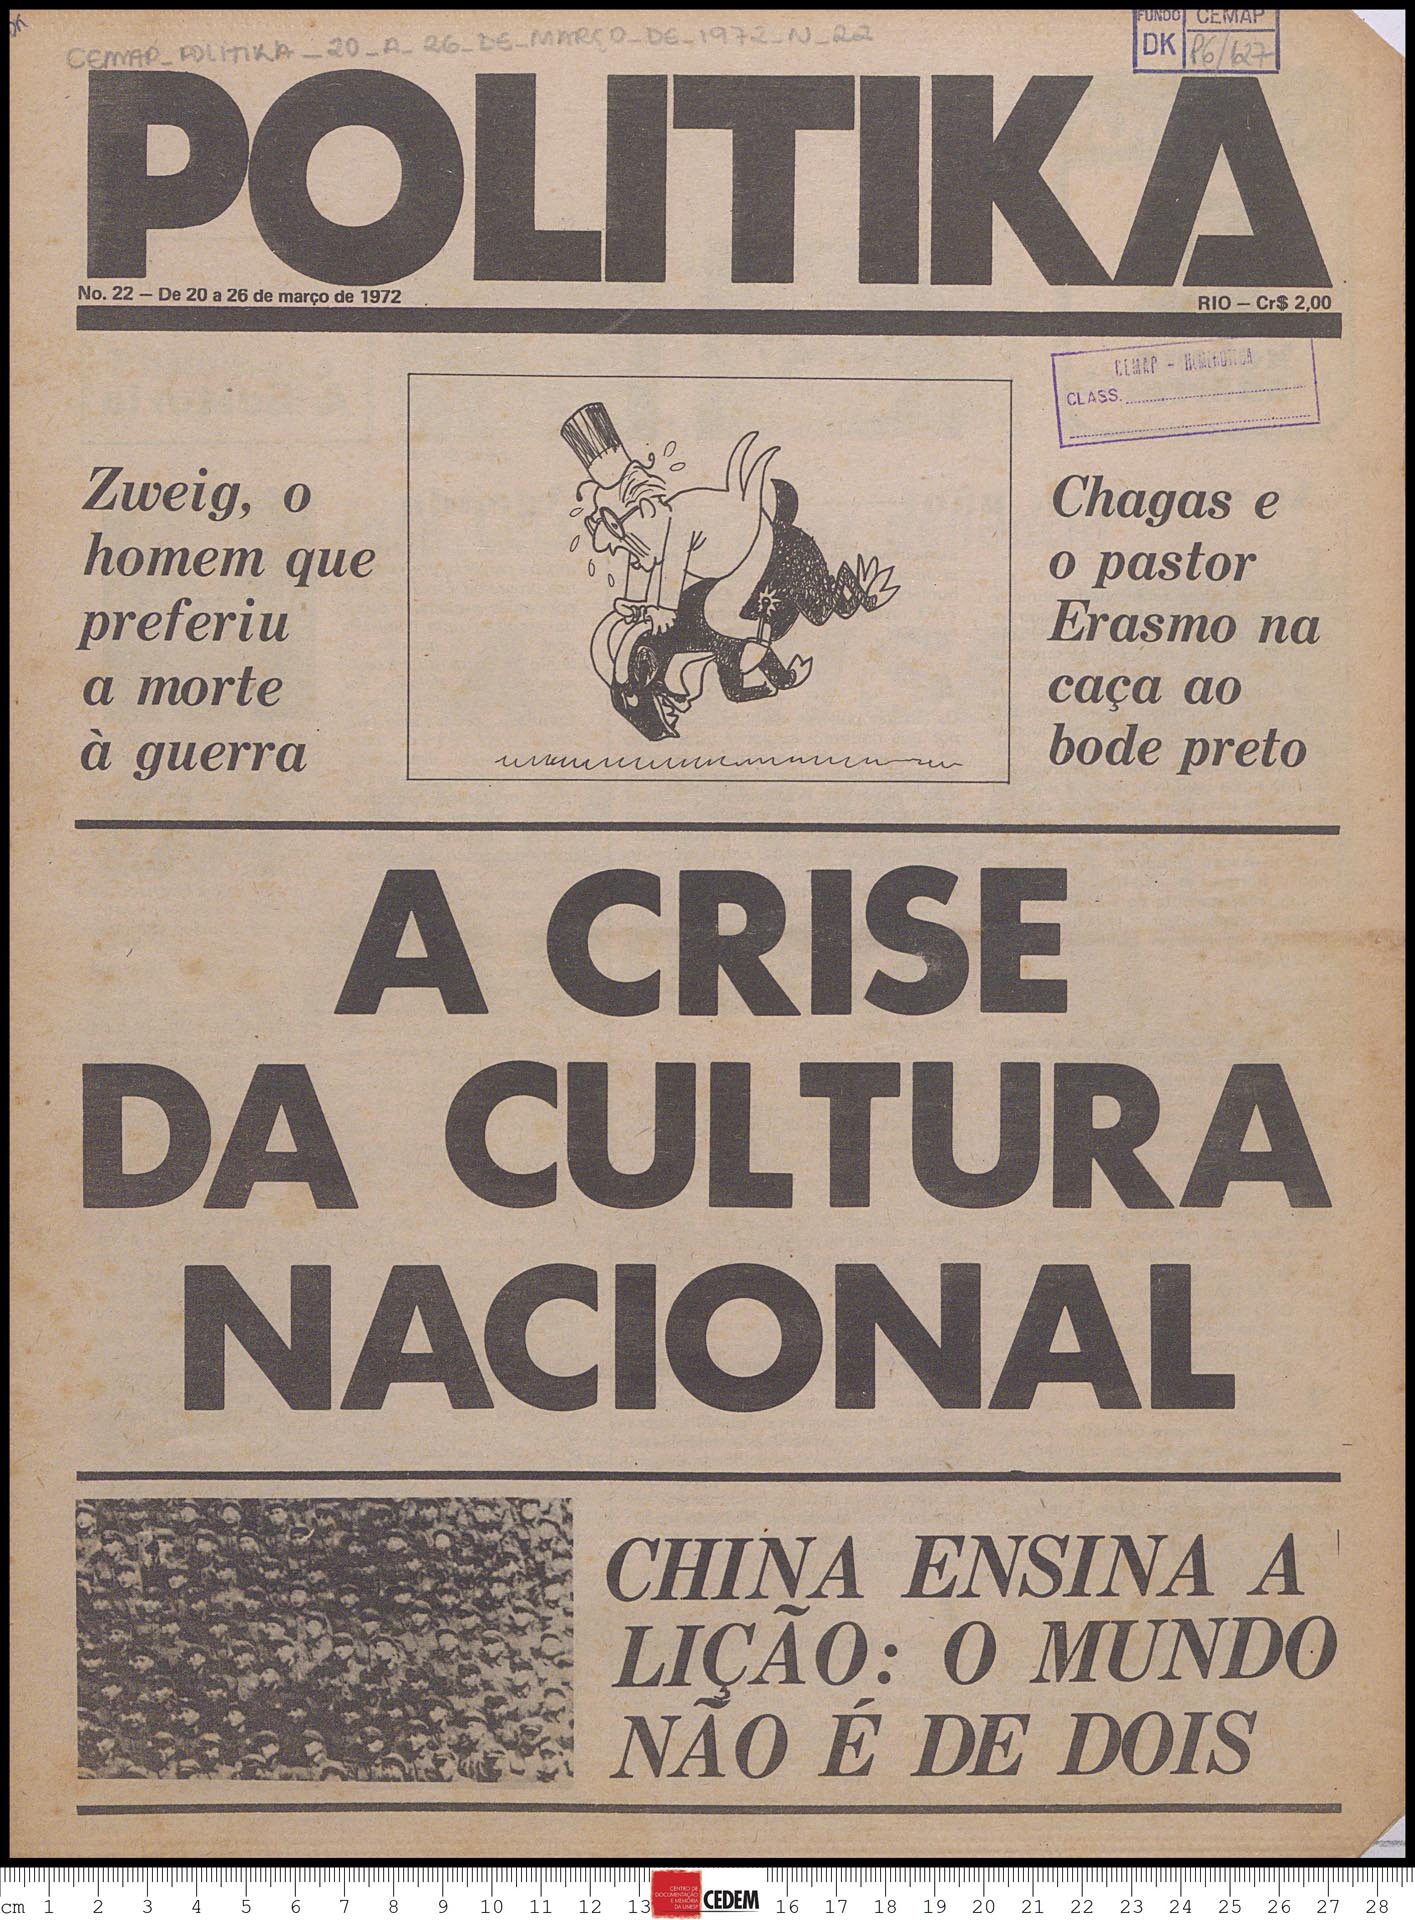 Politika - 22 - 20 a 26 de mar. 1972